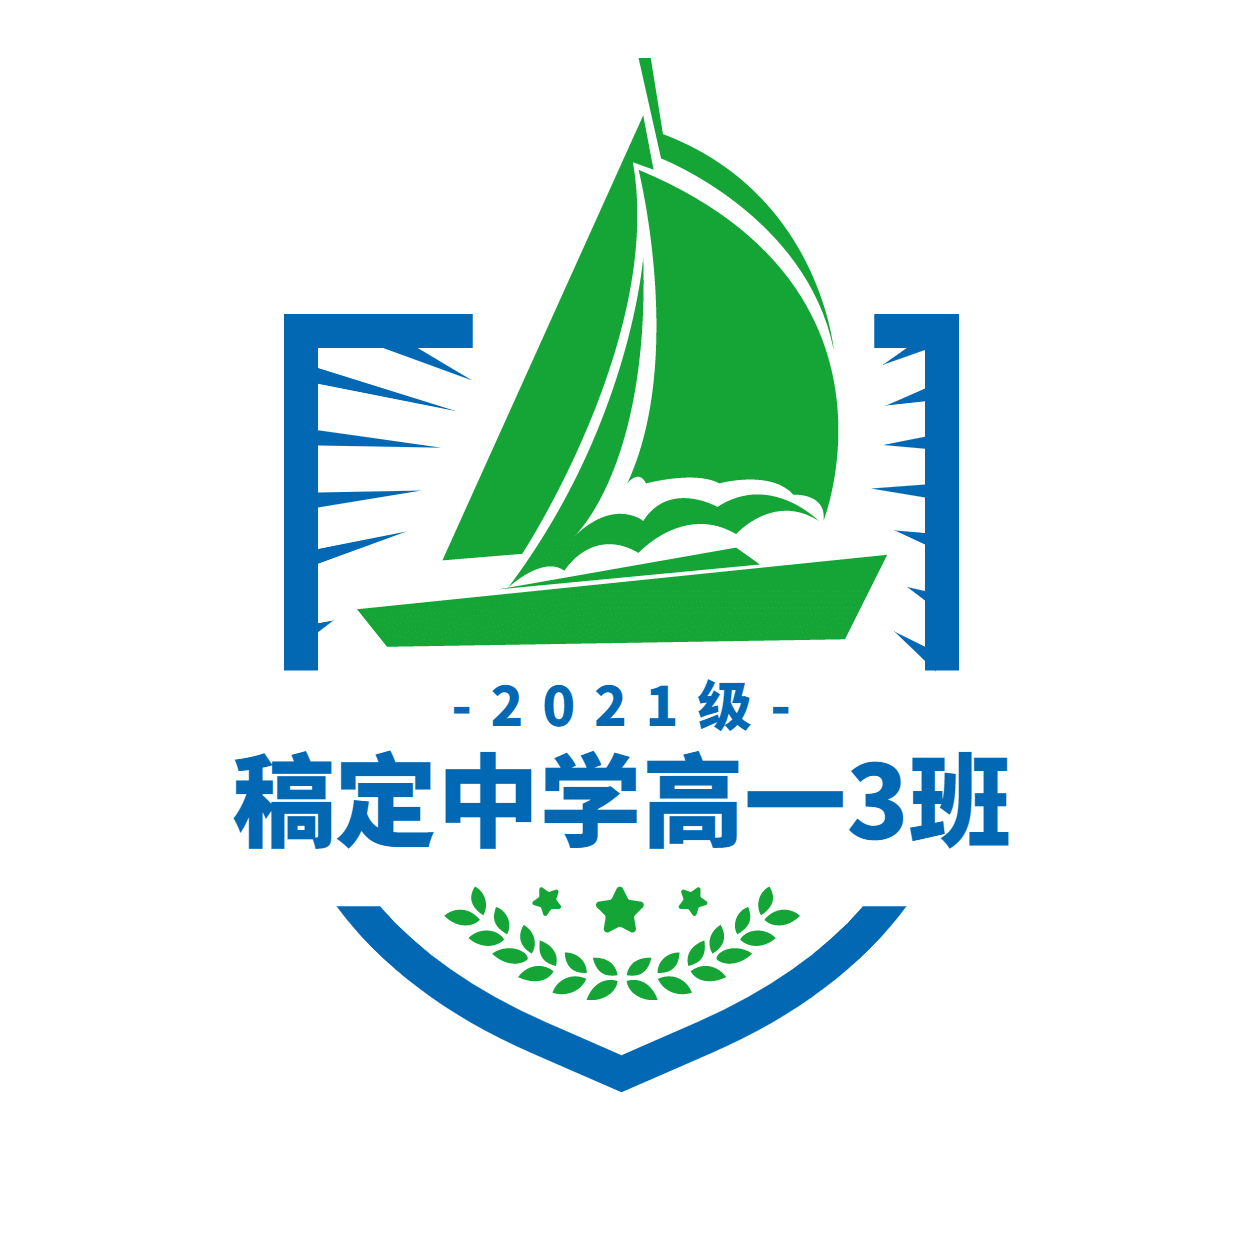 班级班徽校徽帆船头像logo预览效果